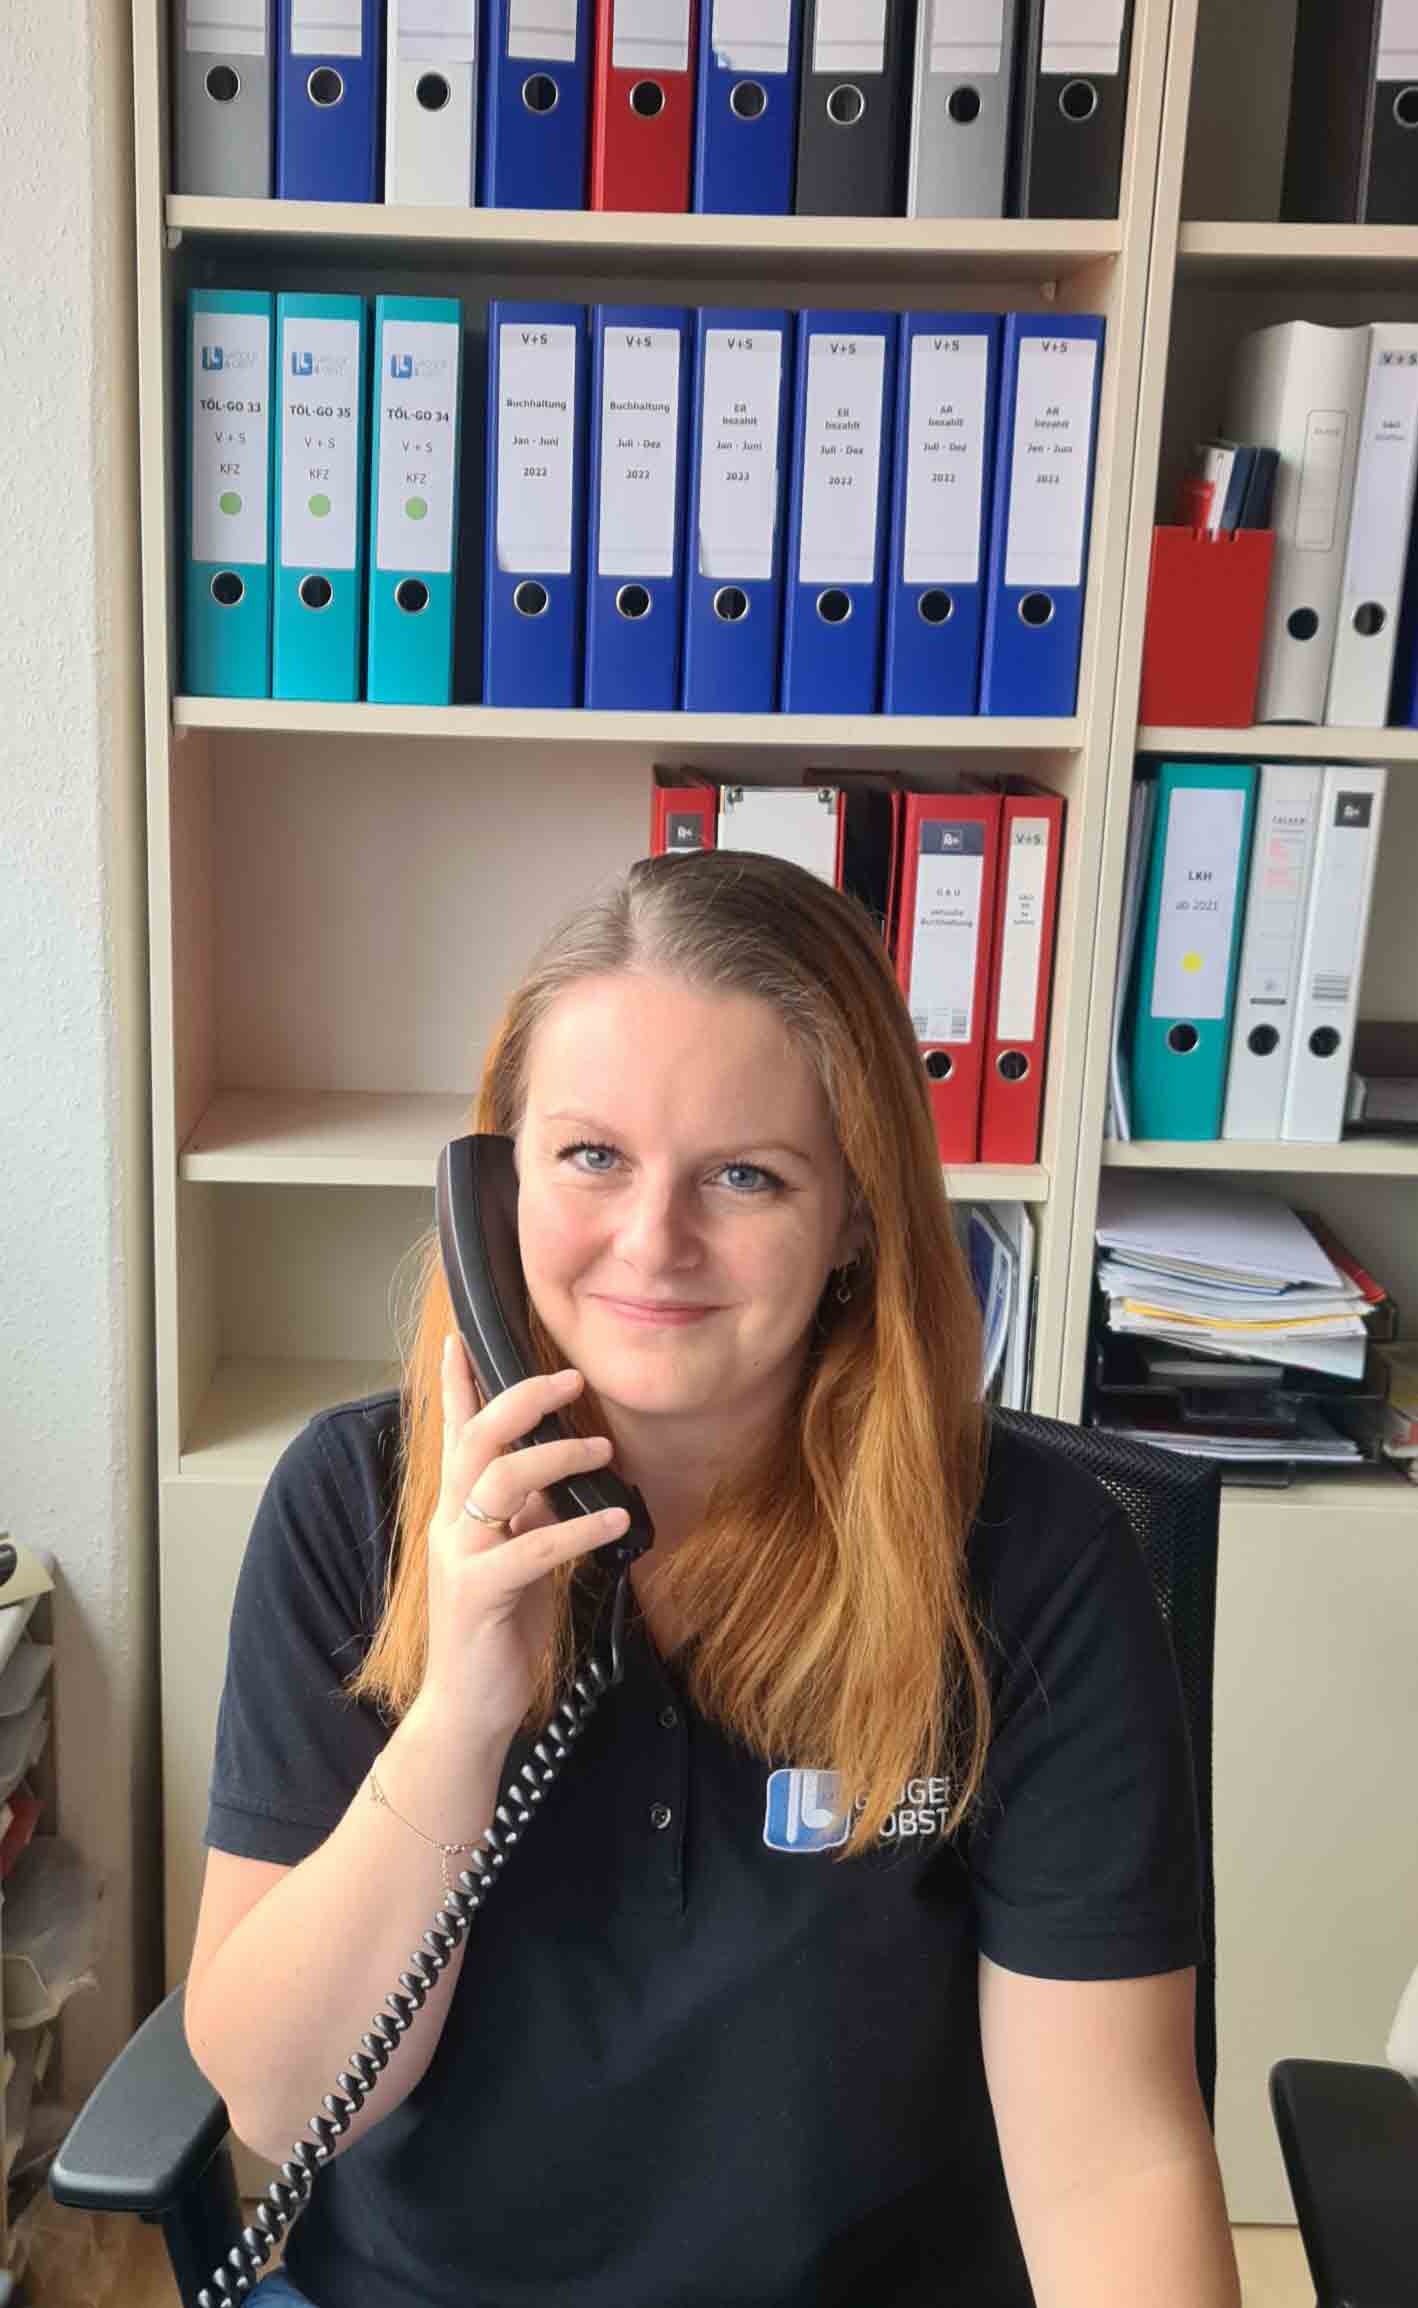 Frau Heimgärtner-Kaisler am Telefon